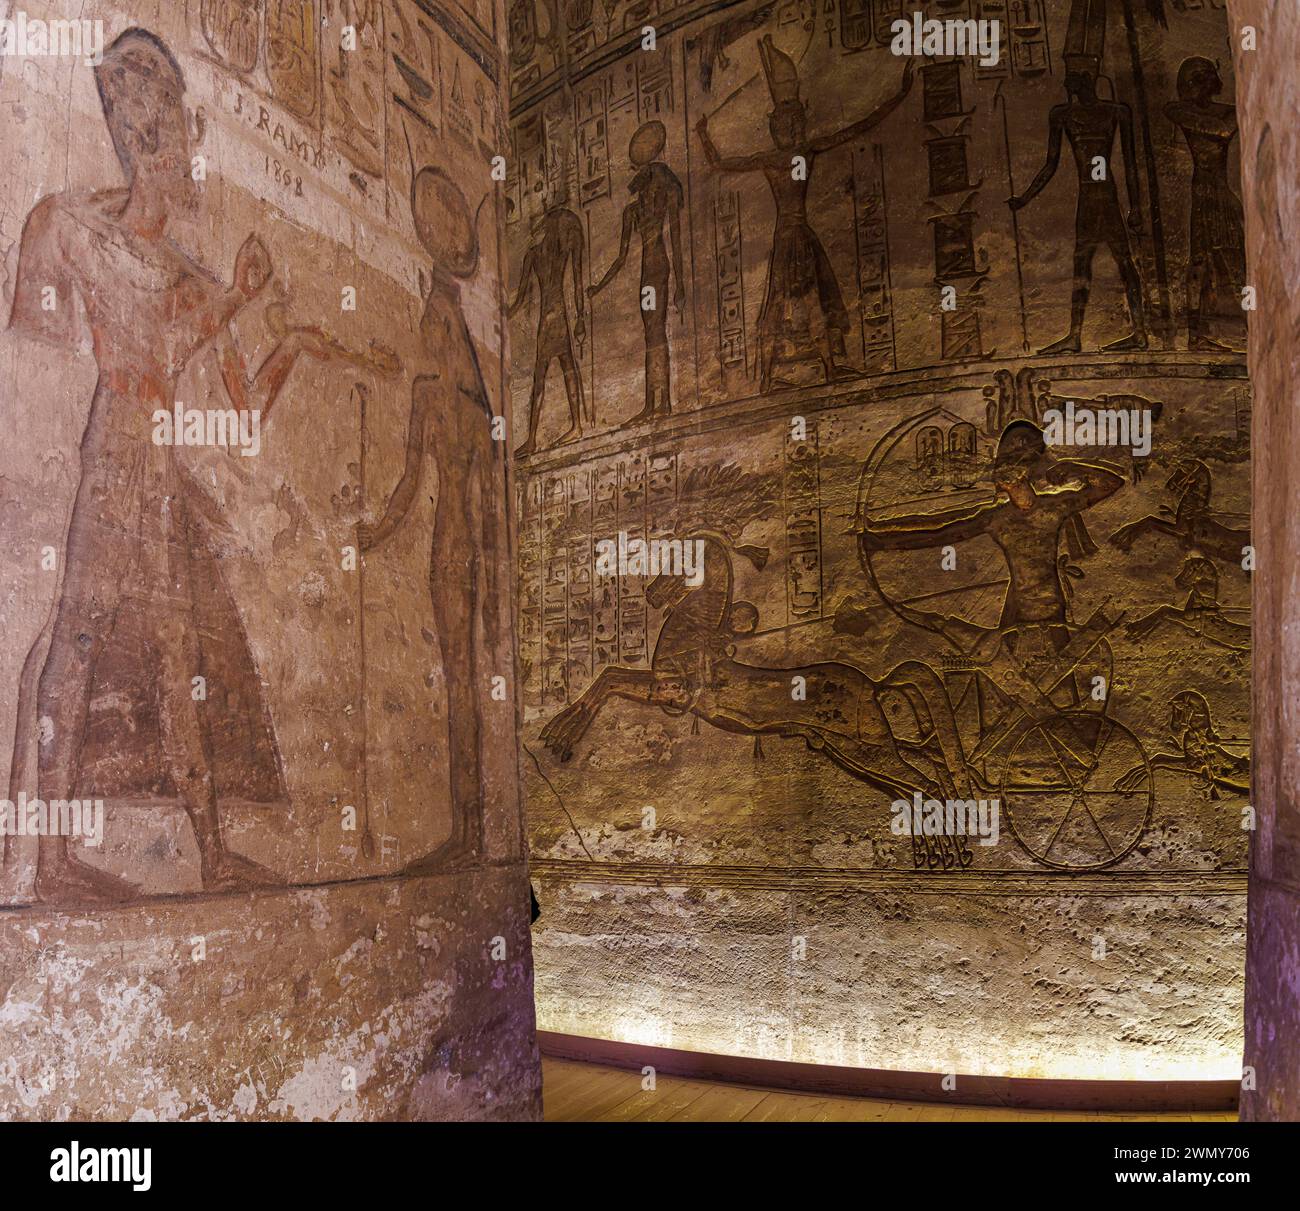 Egitto, Abu Simbel, monumenti nubiani da Abu Simbel a file, patrimonio mondiale dell'UNESCO, tempio Ramses II, la battaglia contro i temhos Foto Stock